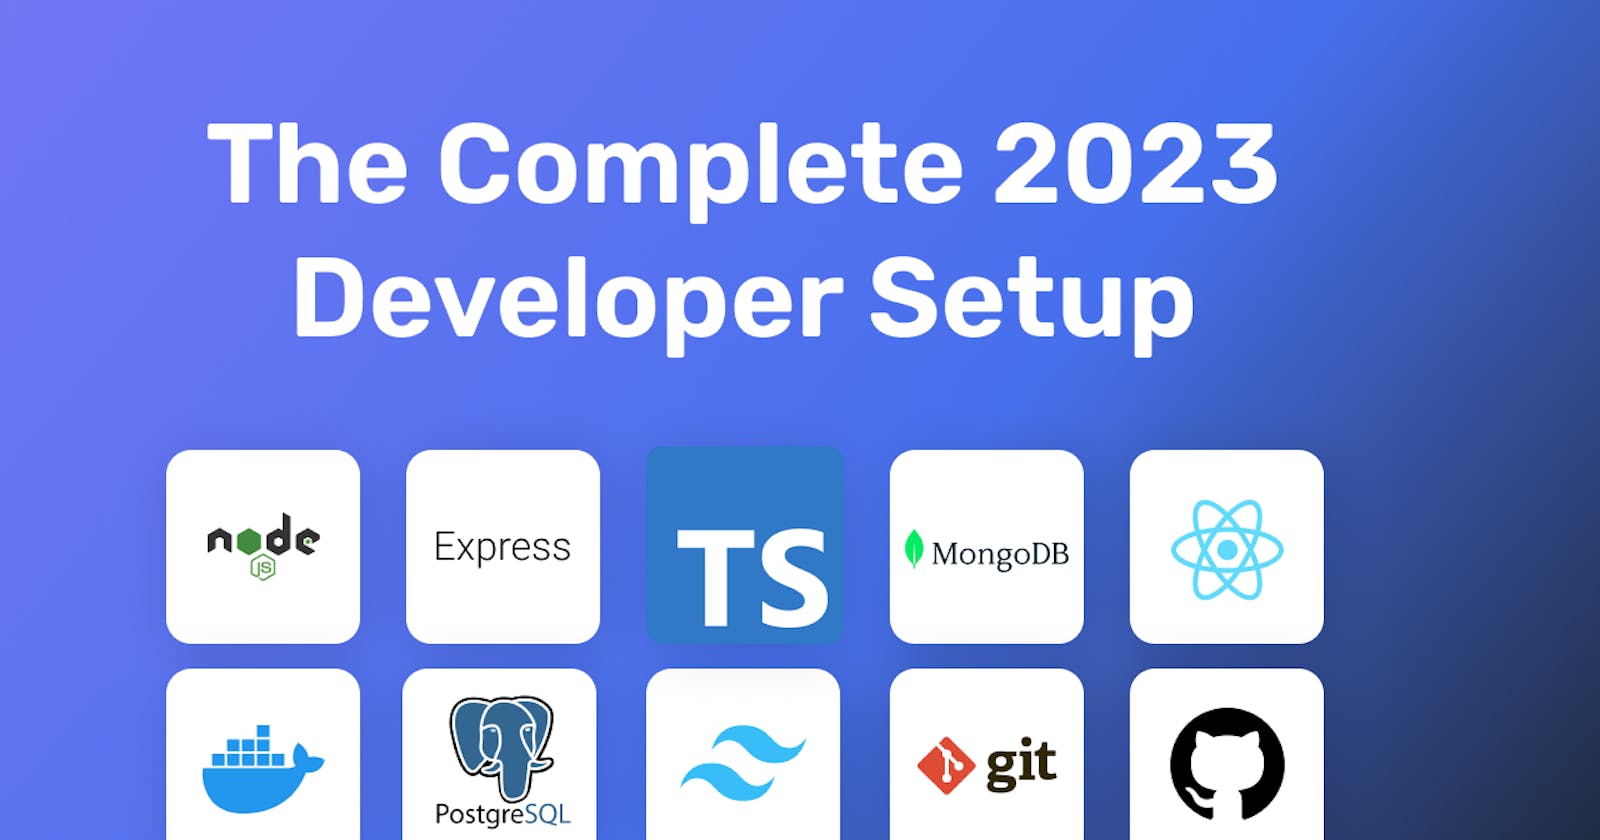 The Complete 2023 Developer Setup